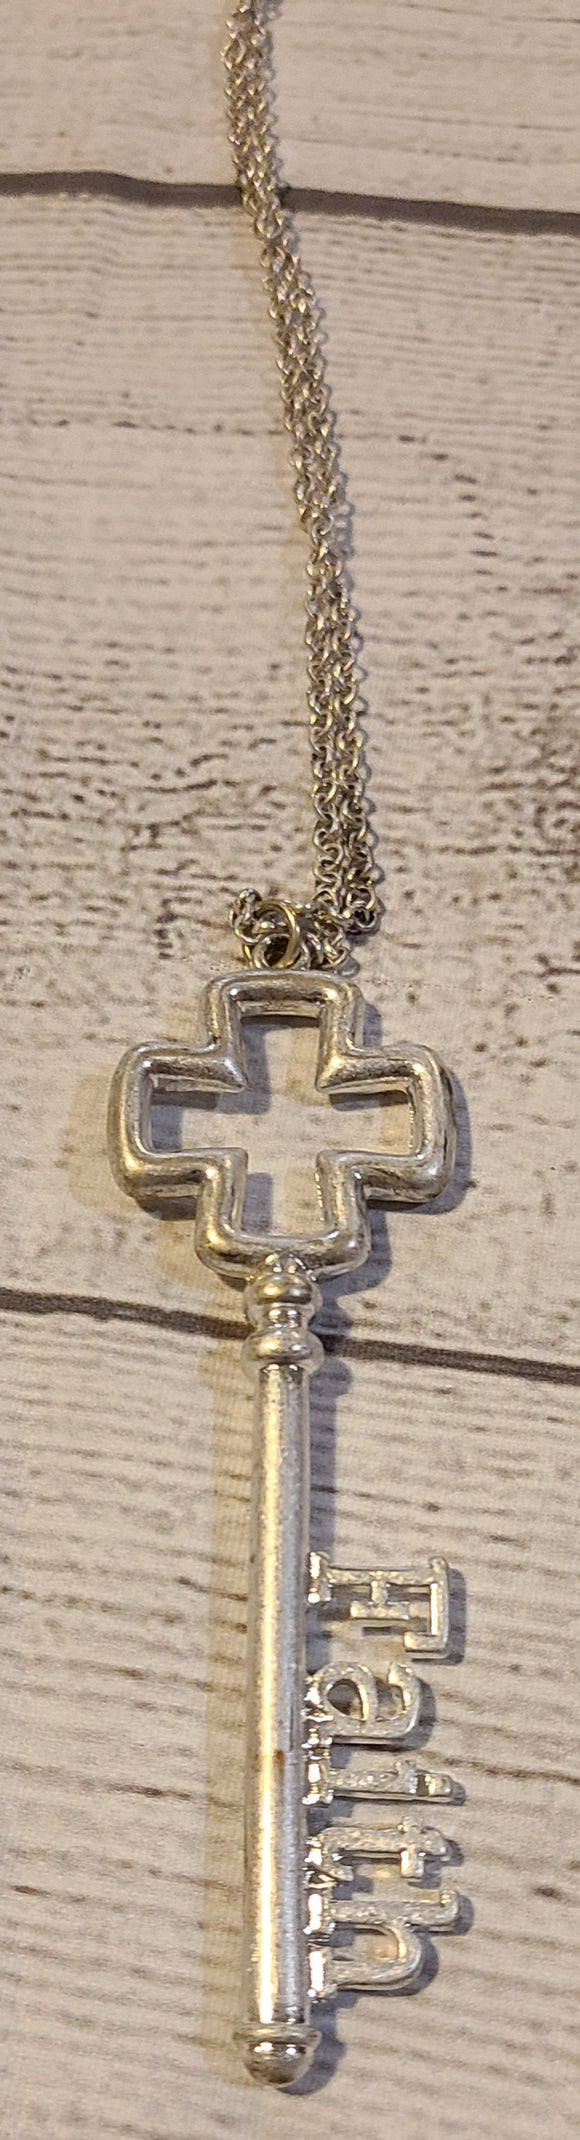 silver faith key necklace